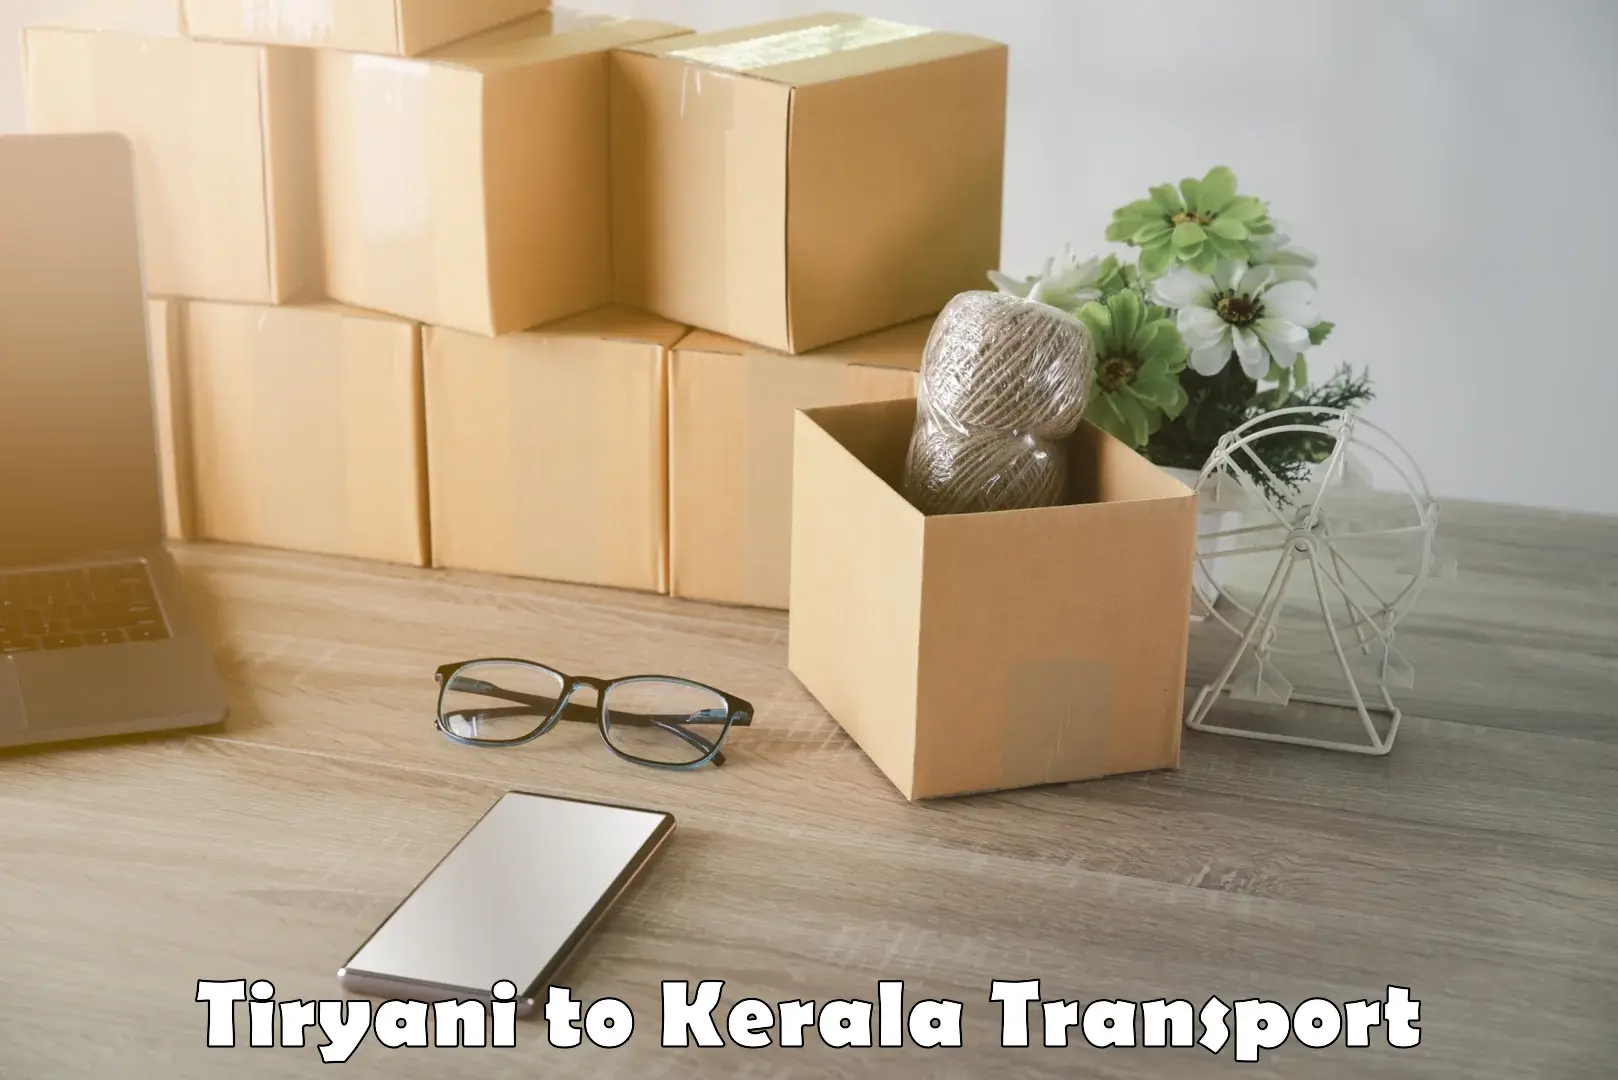 Online transport service Tiryani to Manthuka